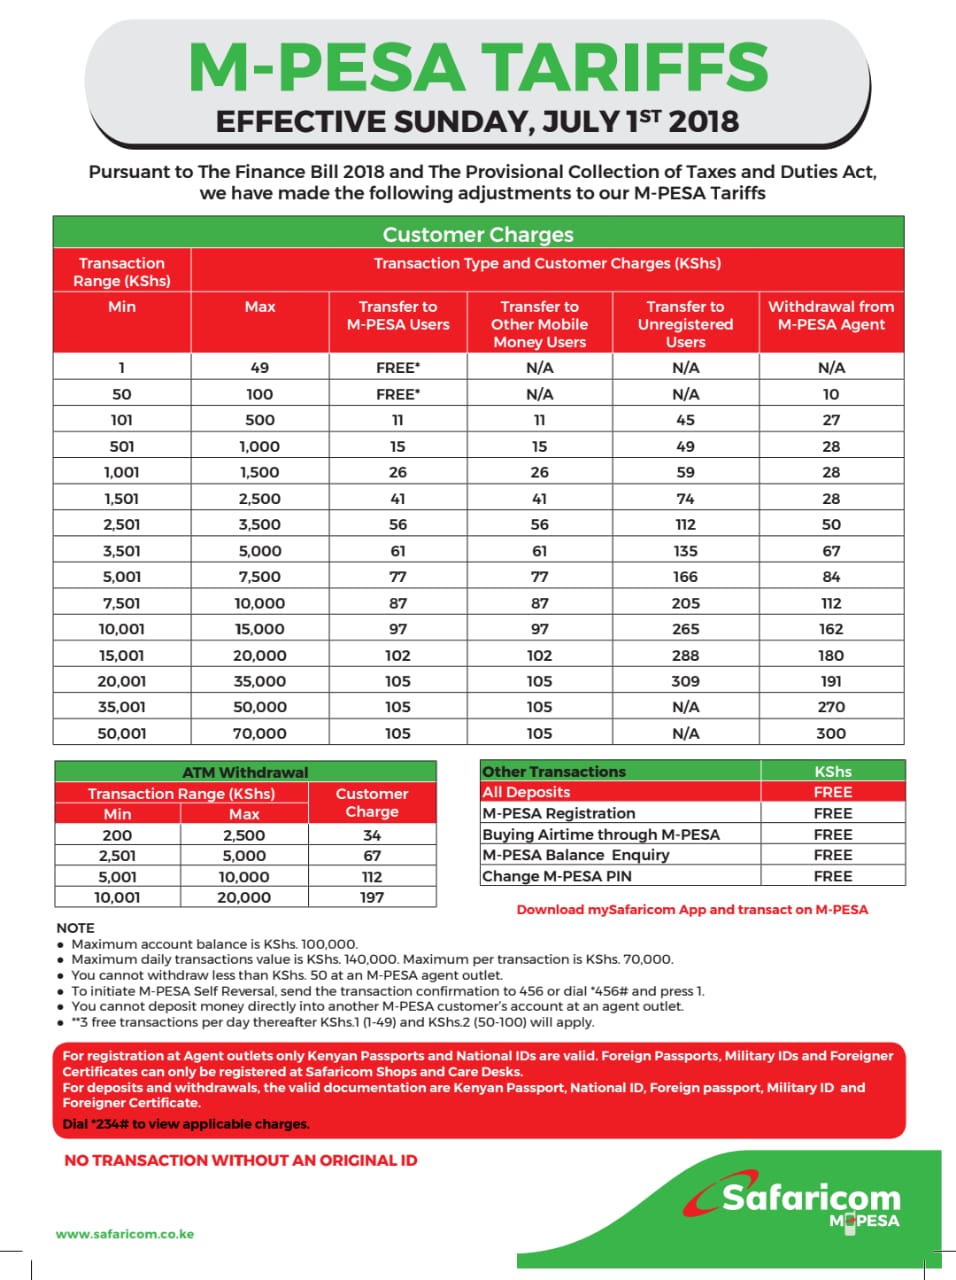 New M-PESA Tariffs